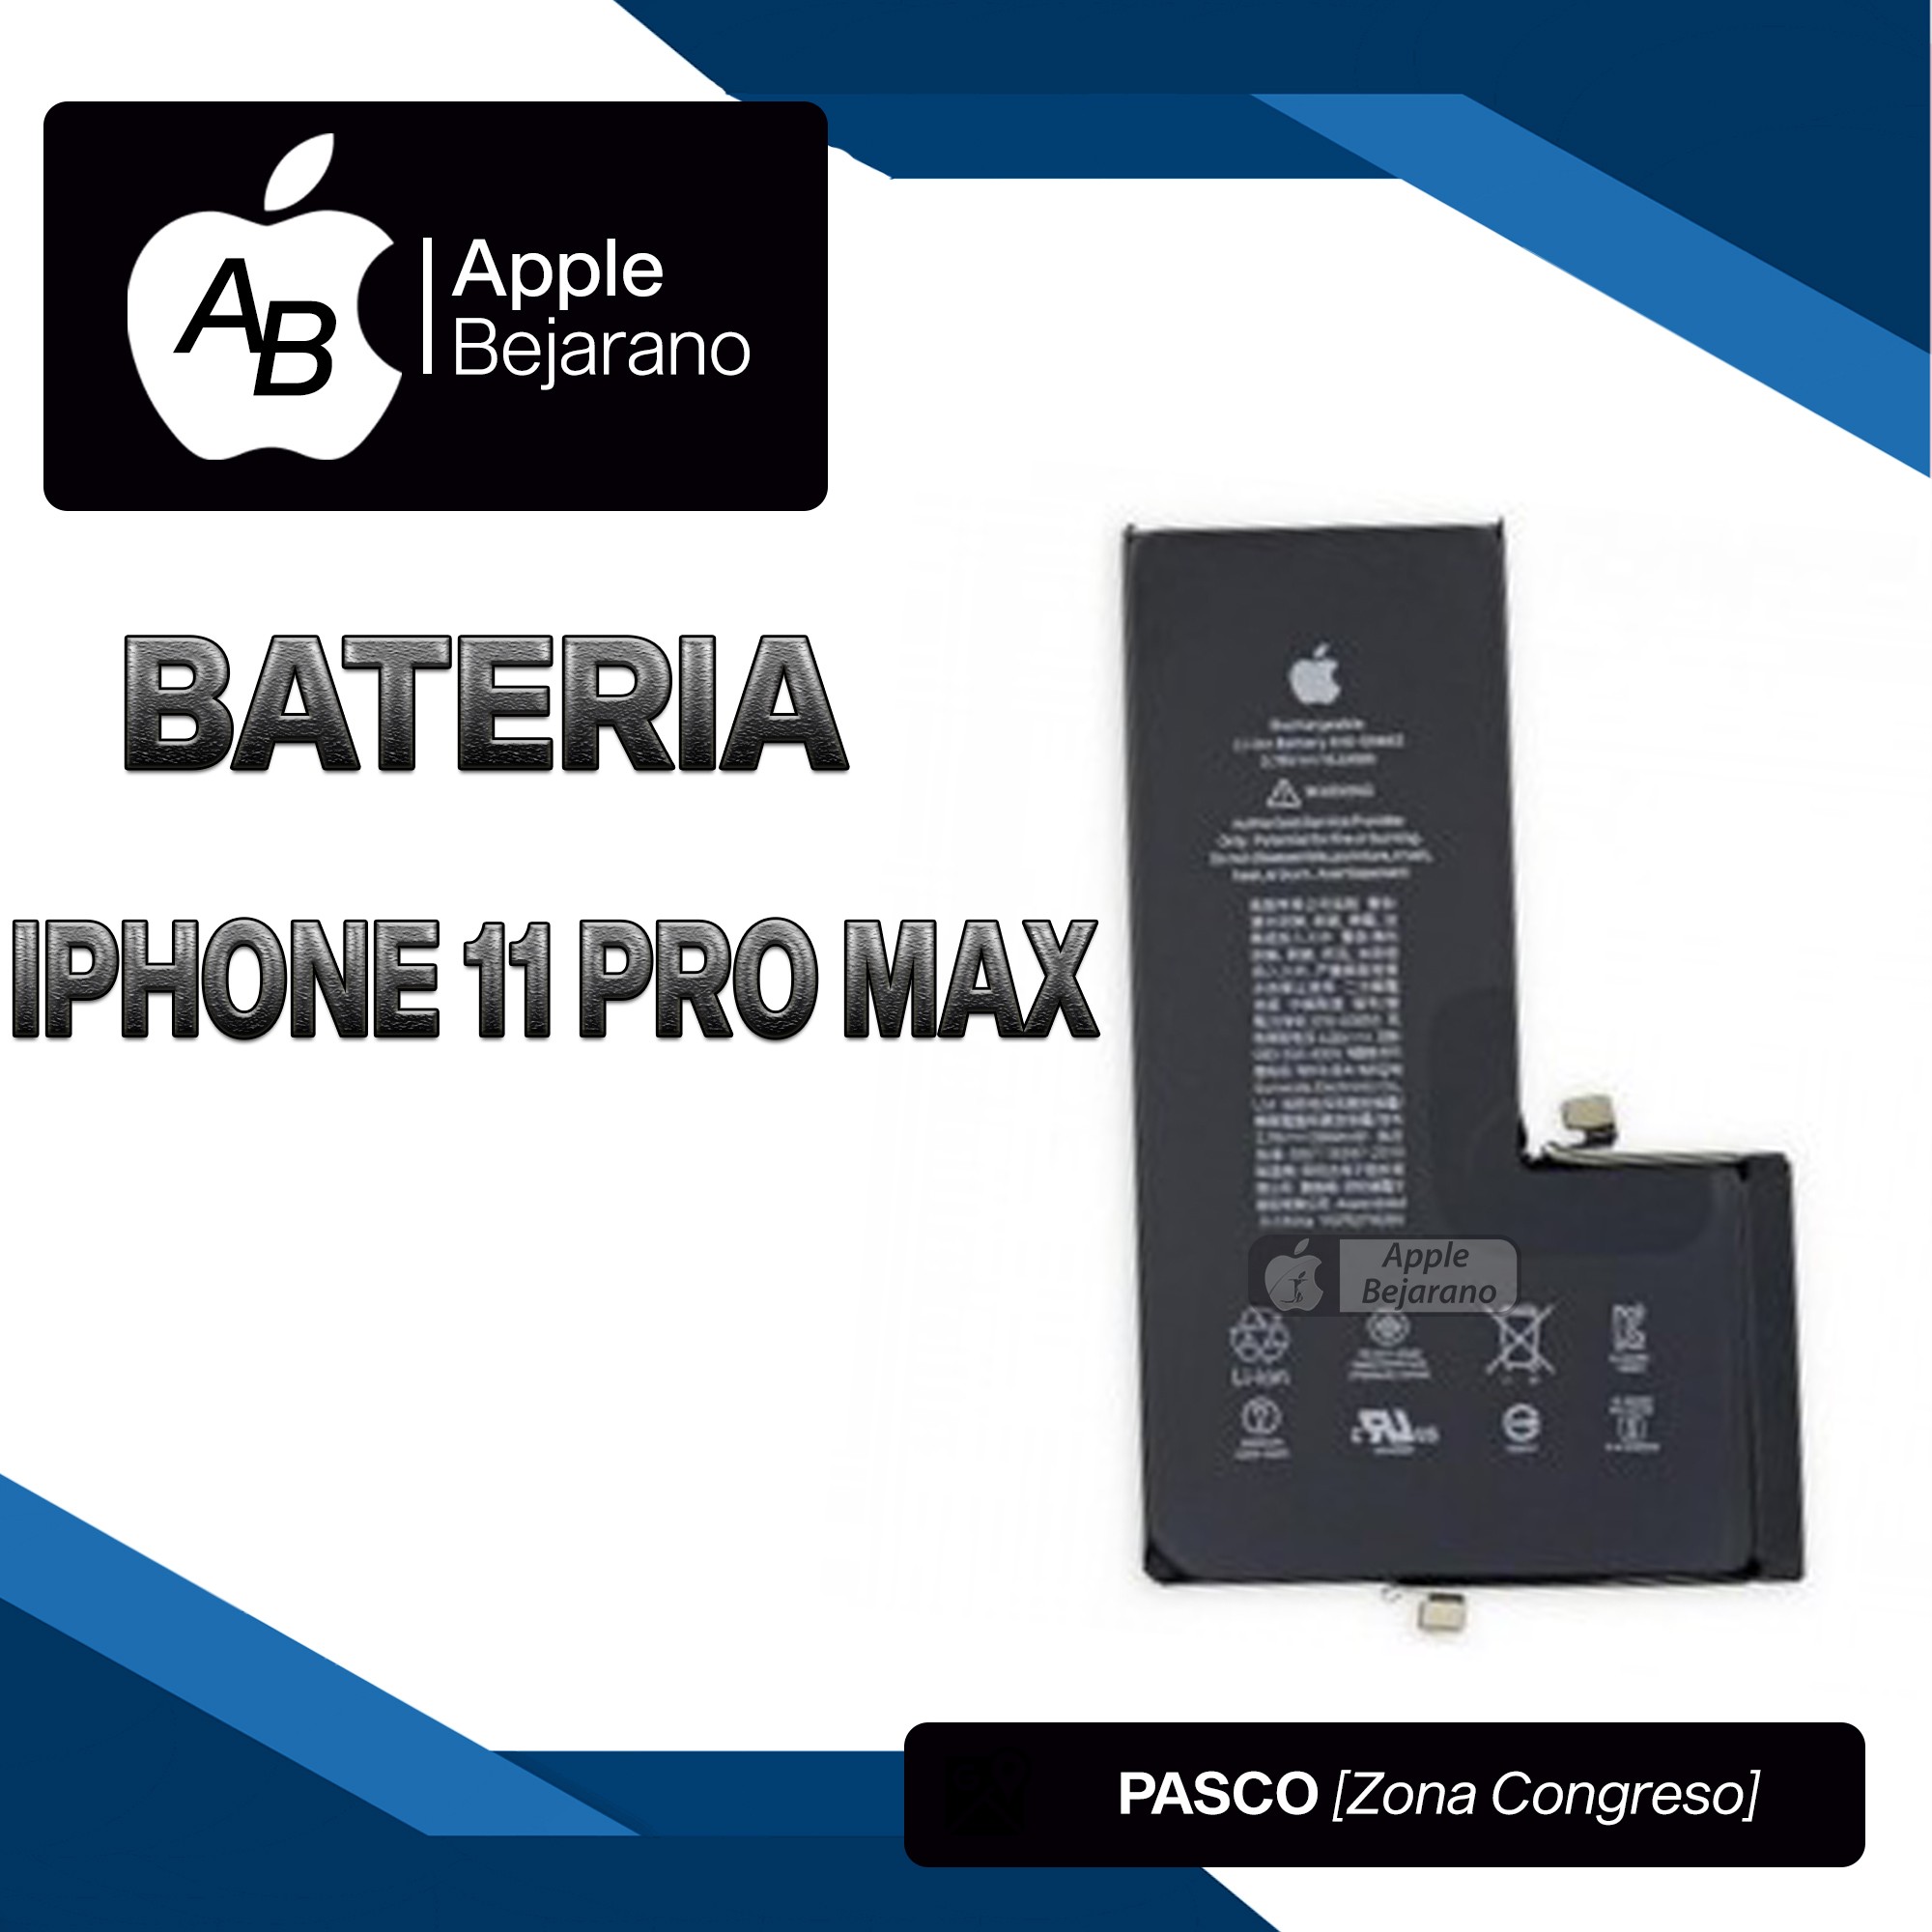 BATERIA IPHONE 11 PRO MAX CALIDAD ORIGINAL – APPLE BEJARANO